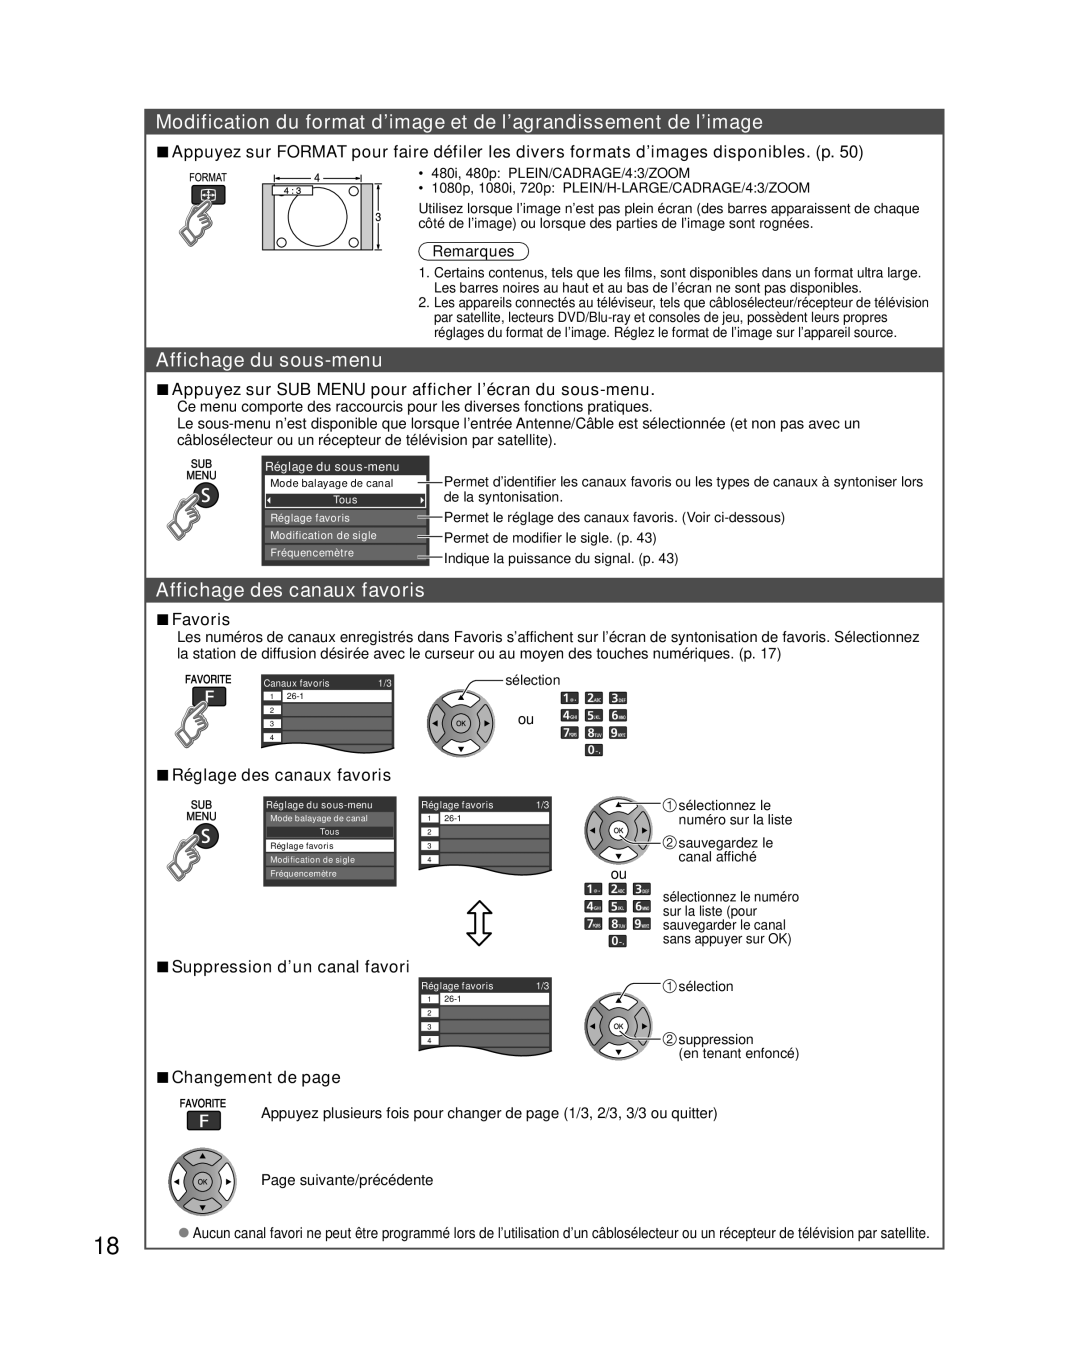 Panasonic TC-L32E3 Modification du format d’image et de l’agrandissement de l’image, Affichage du sous-menu, Favoris 